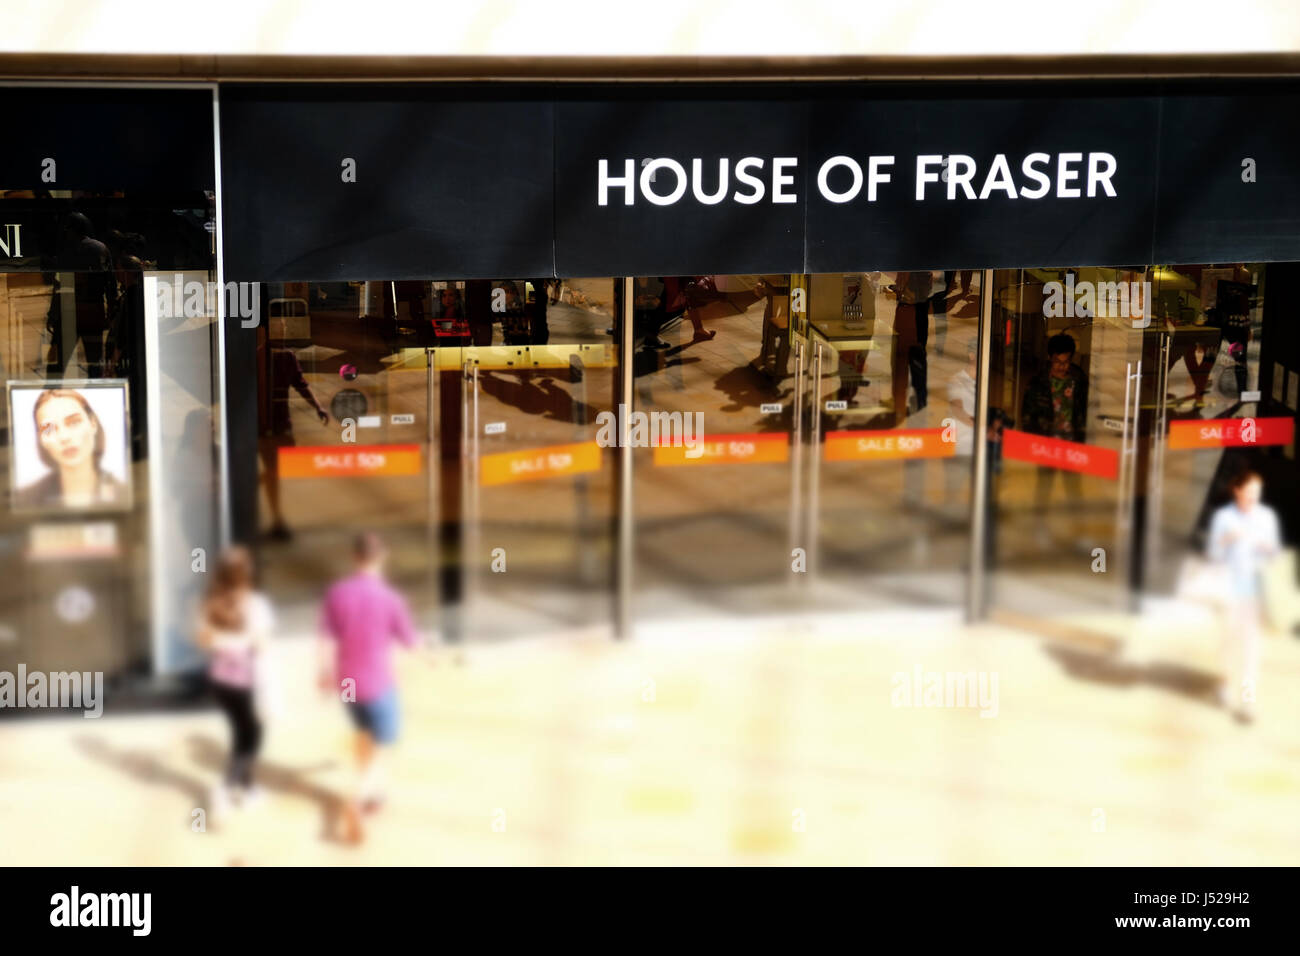 La entrada a una casa de Faser store, mostrando claramente el nombre y la marca comercial de la empresa Foto de stock